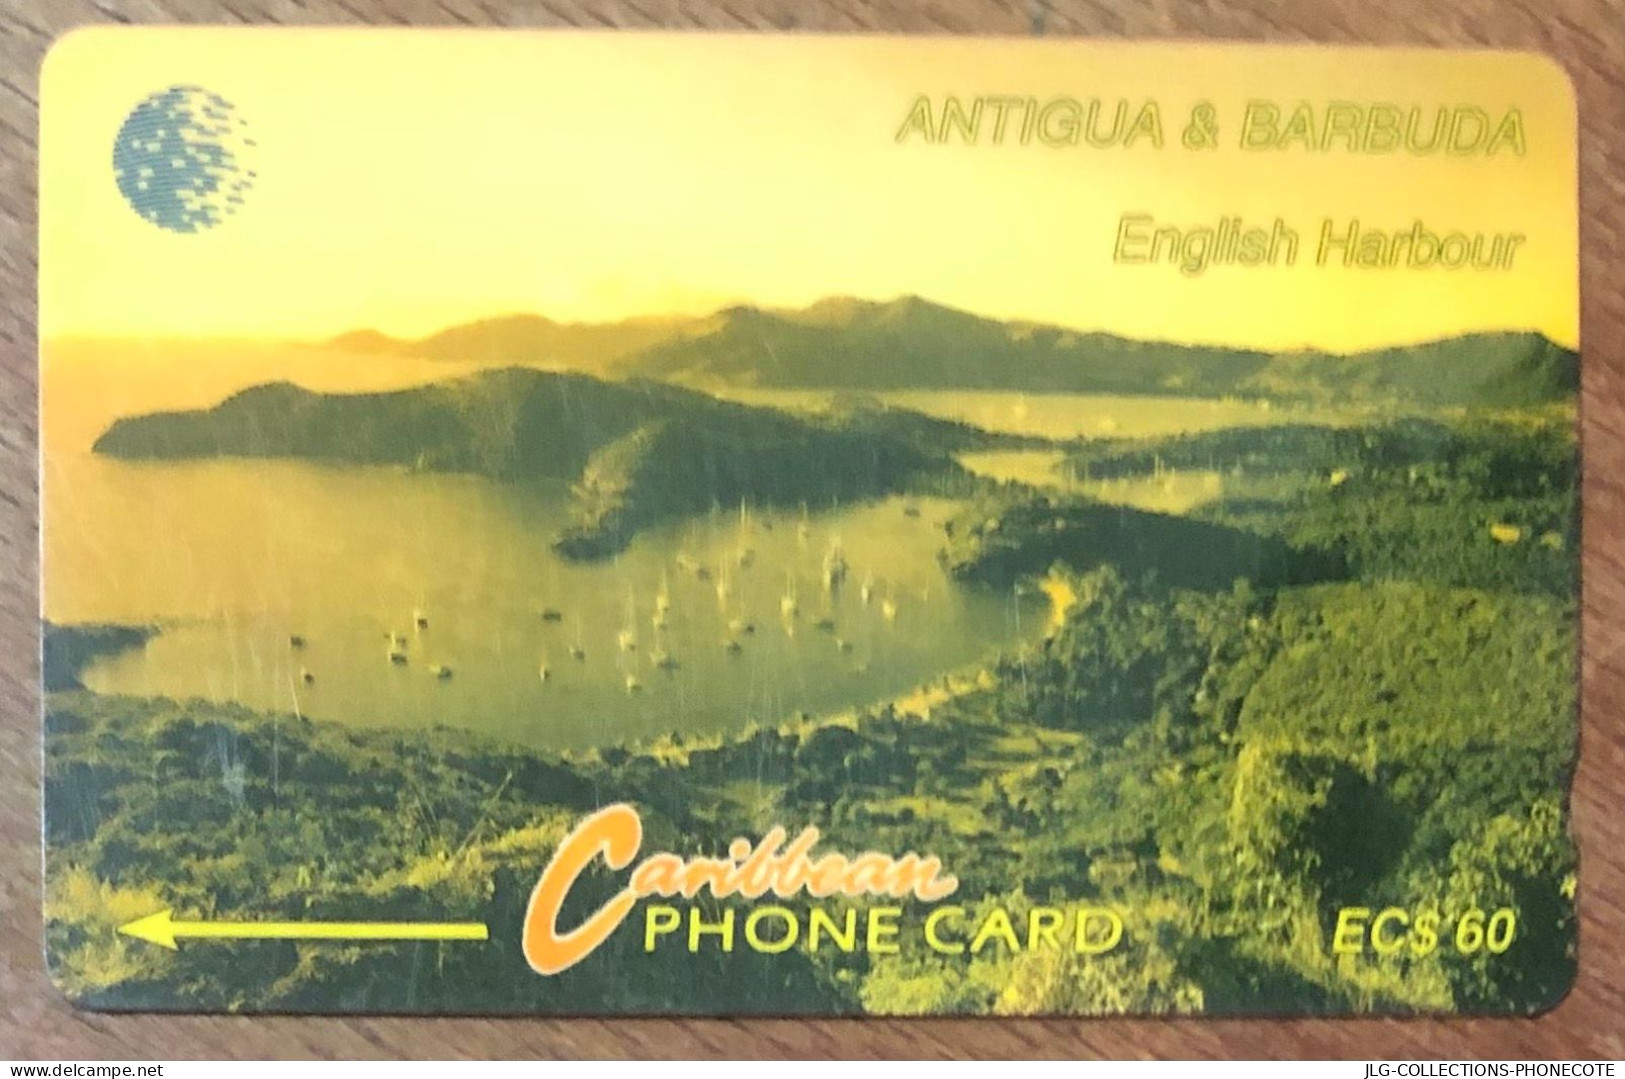 ANTIGUA & BARBUDA ENGLISH HARBOUR EC$ 60 CARIBBEAN CABLE & WIRELESS SCHEDA PREPAID TELECARTE TELEFONKARTE PHONECARD - Antigua Y Barbuda